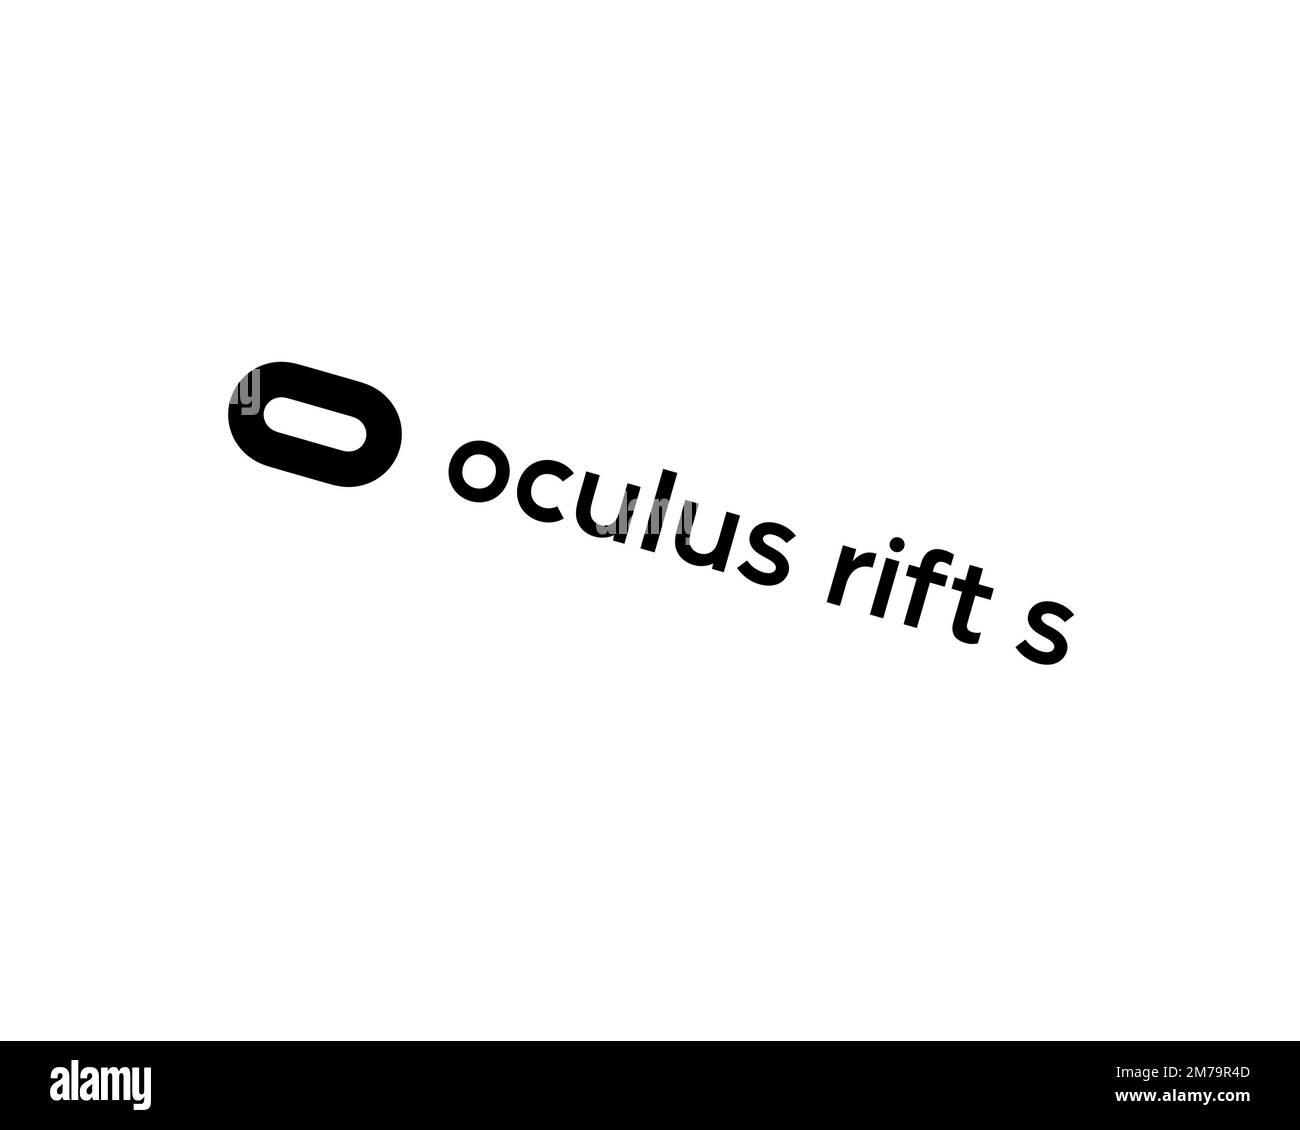 Oculus Rift S, logo pivoté, arrière-plan blanc B Banque D'Images